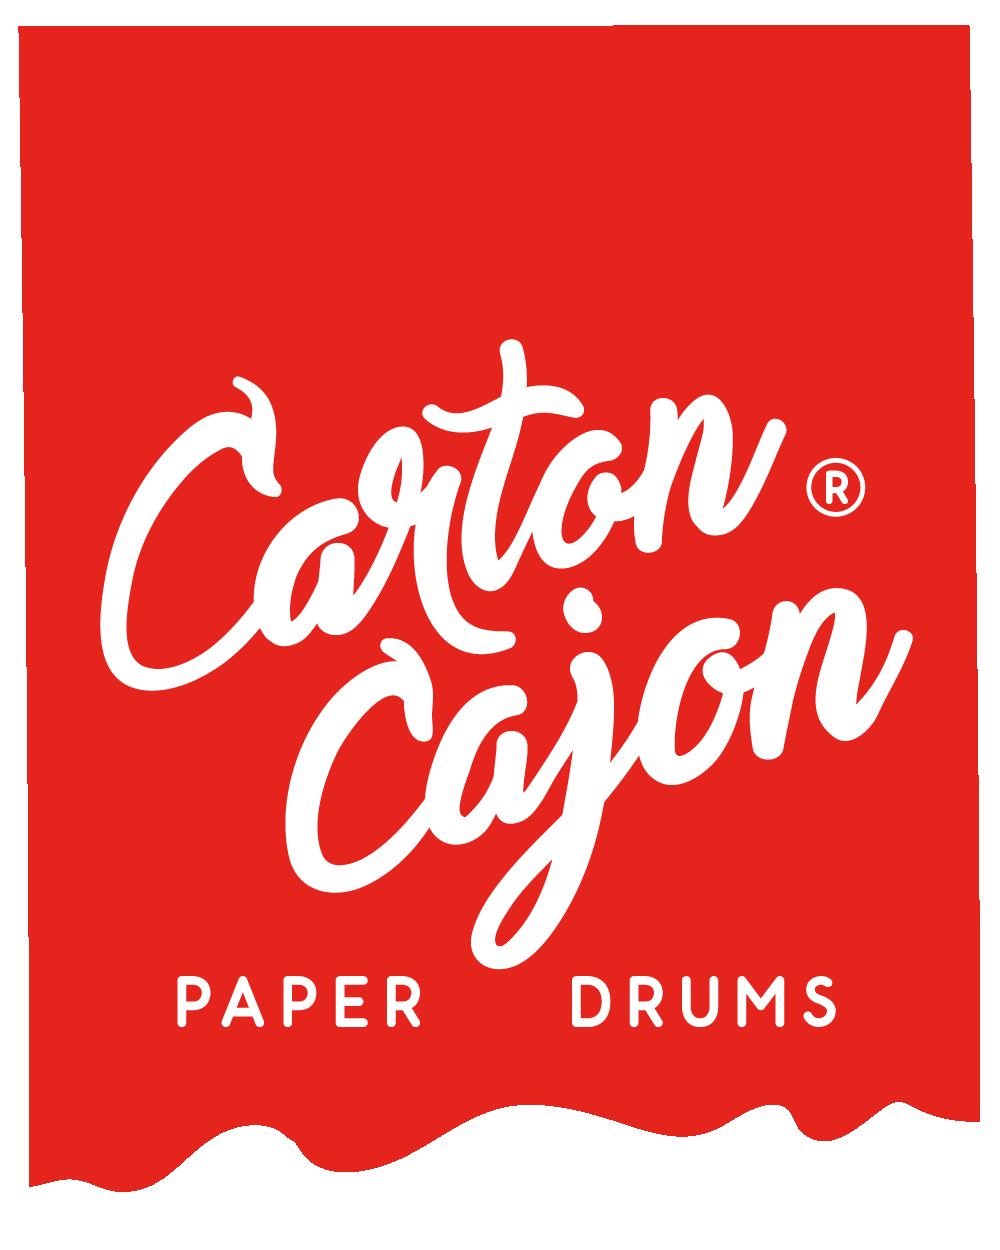 Carton Cajon